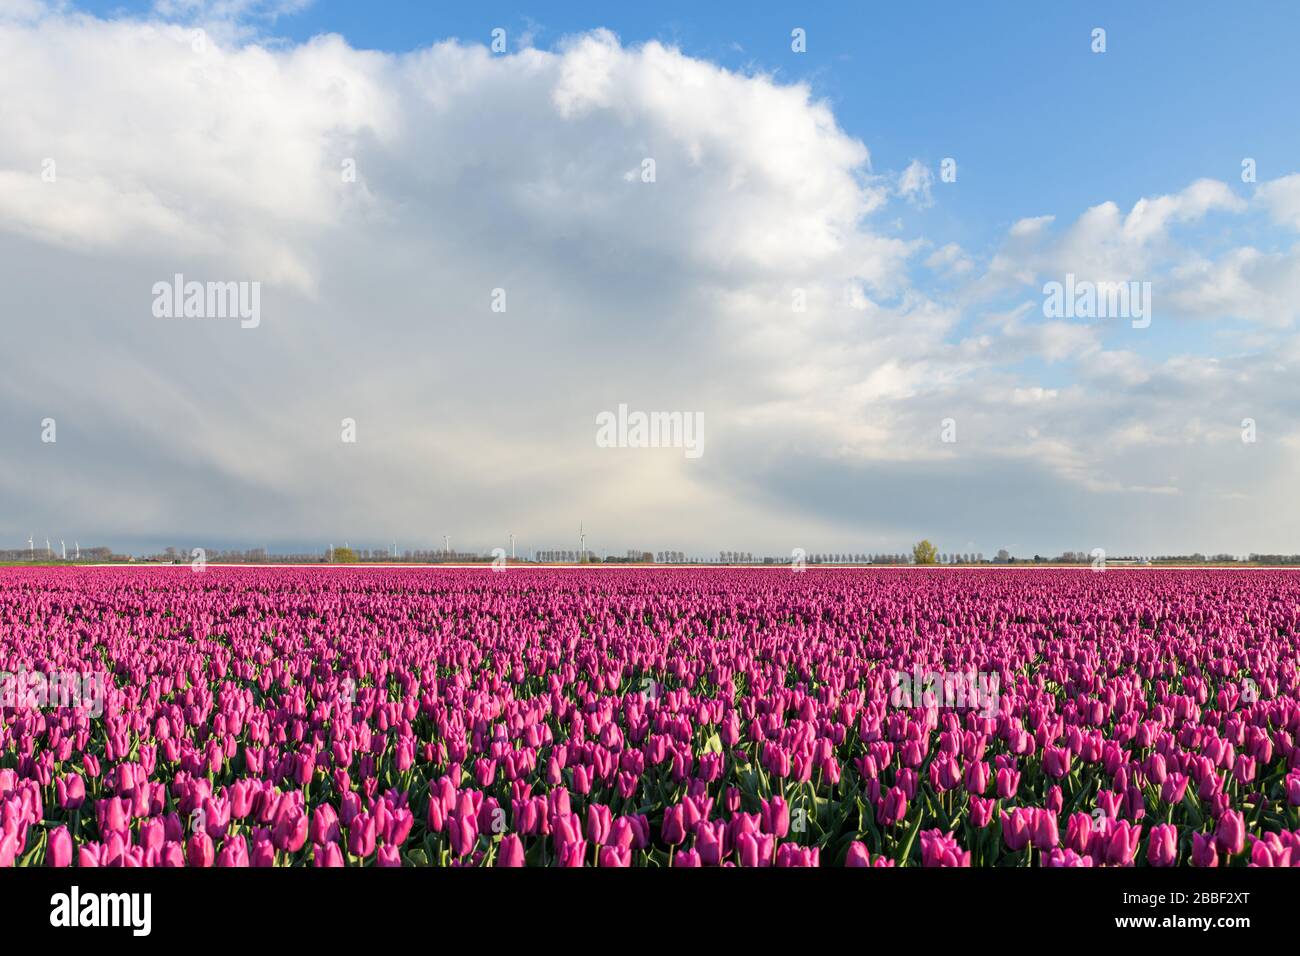 Champs de tulipes roses à fleurs violettes sous un beau ciel bleu avec des nuages près de Dirksland à Goeree-Overflakkee aux Pays-Bas Banque D'Images